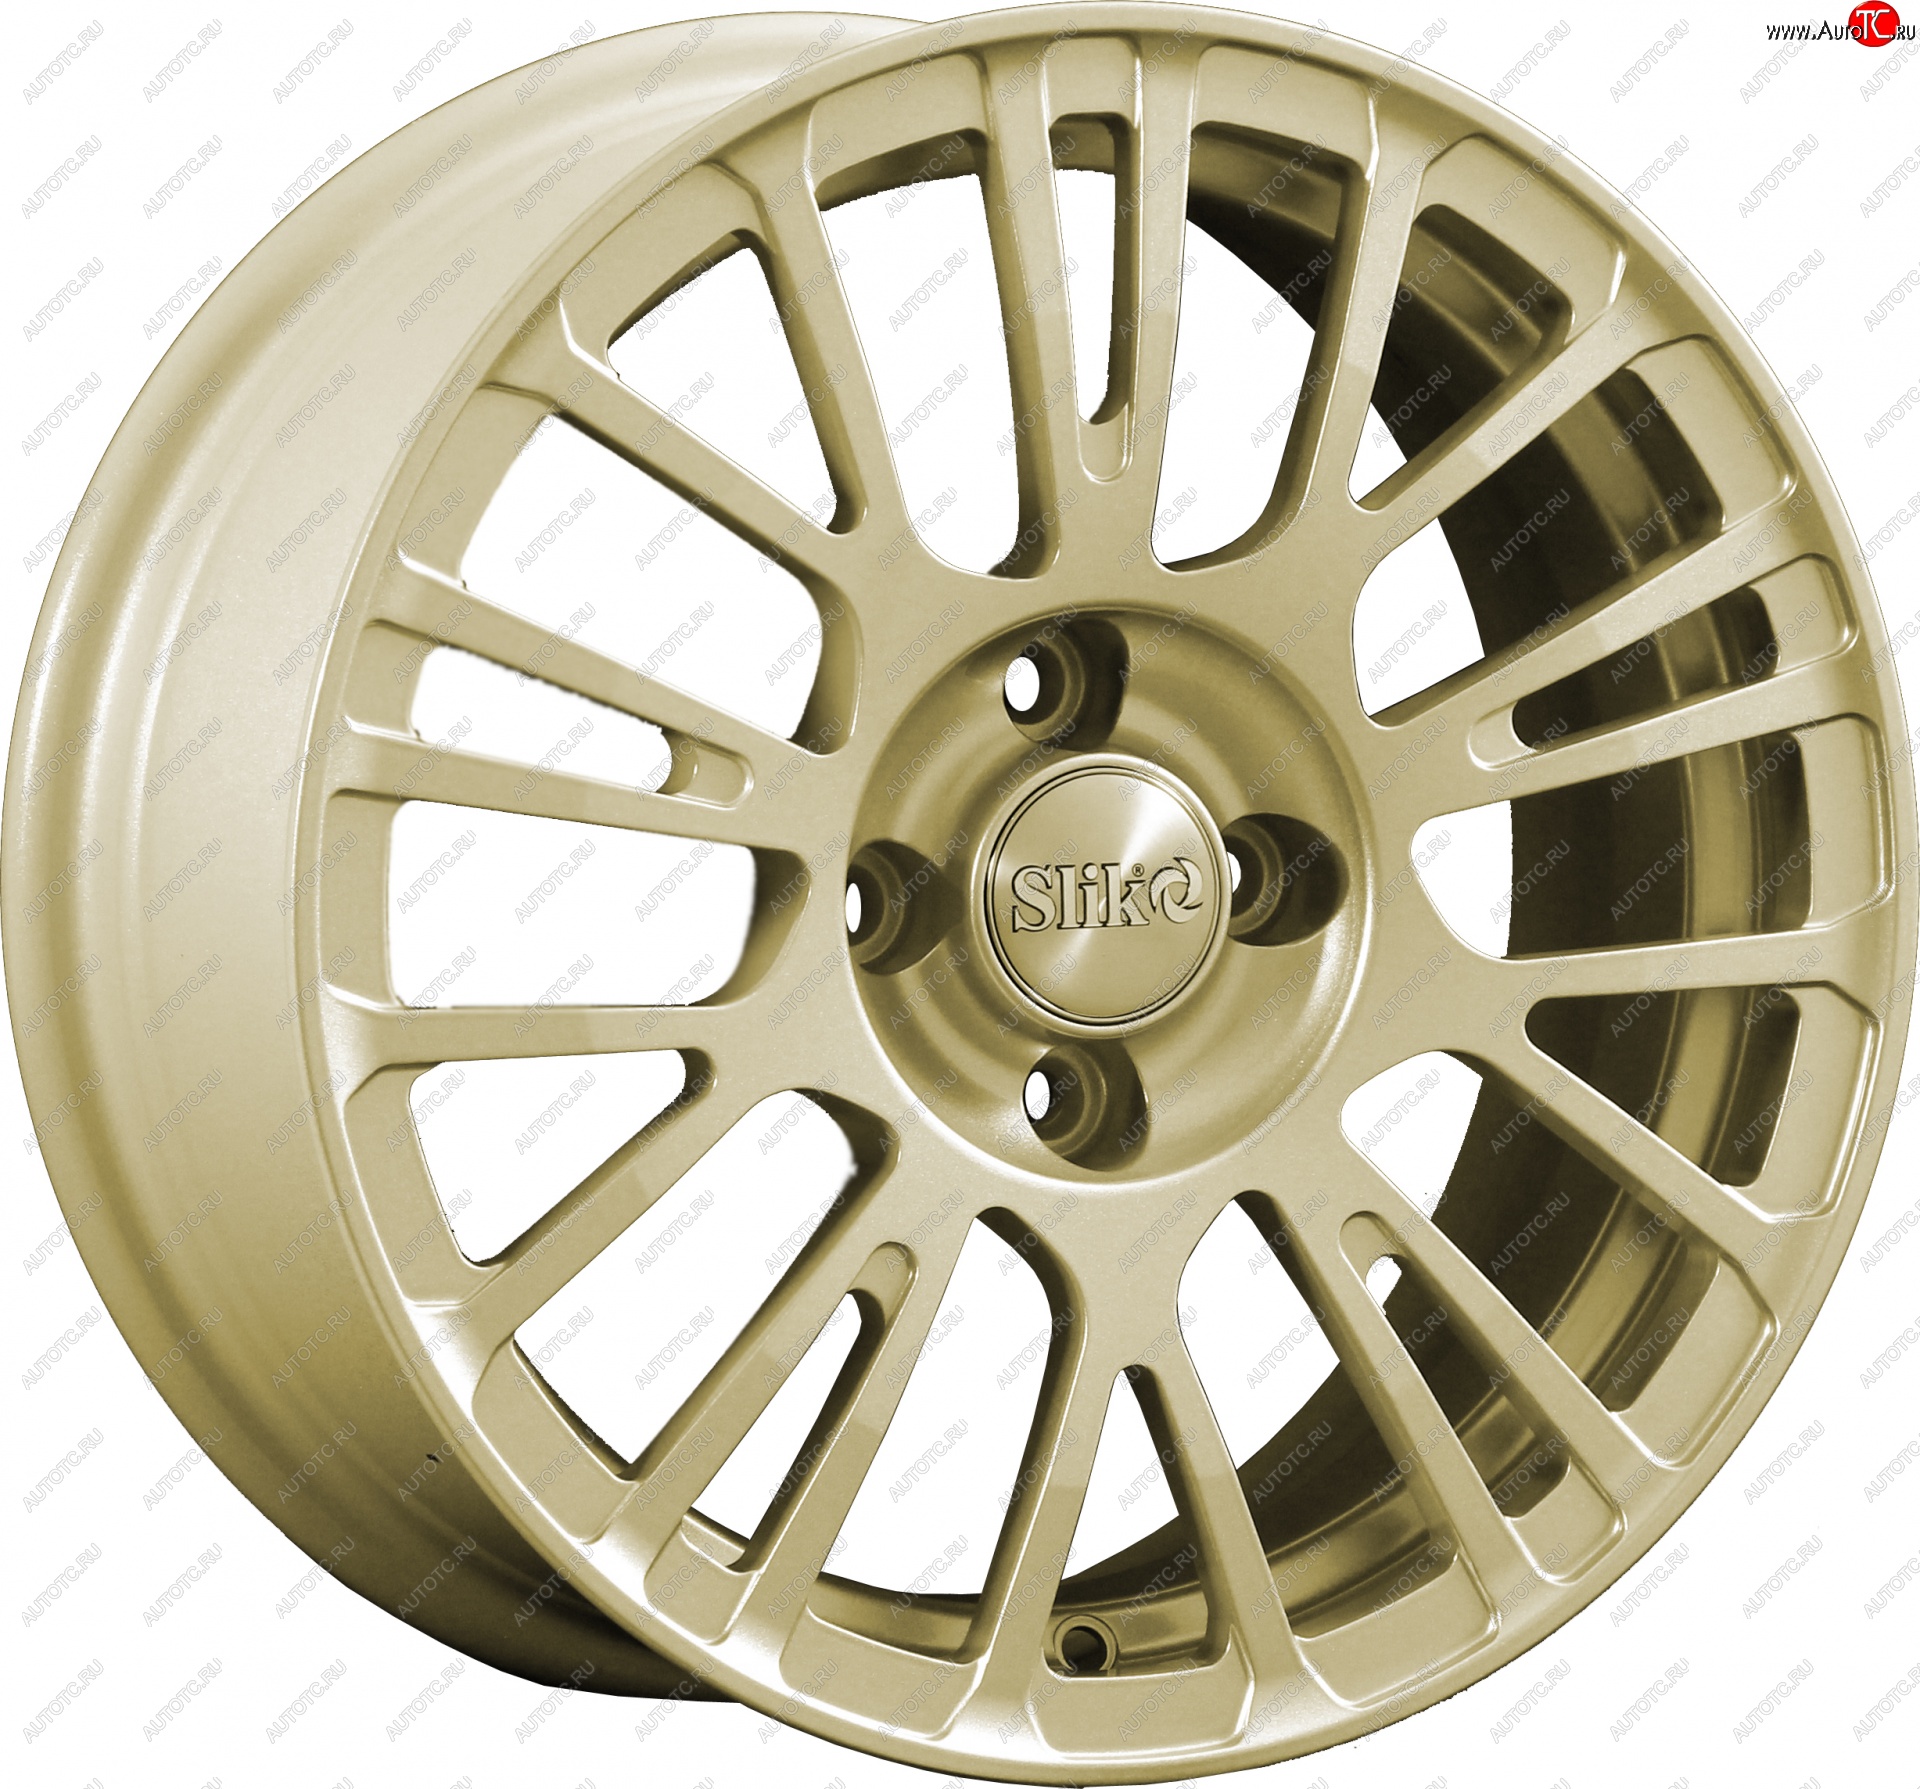 11 899 р. Кованый диск Slik Classik 6.5x15 (Металлик золотой) Nissan Tiida 1 седан C11 рестайлинг (2010-2014) 4x114.3xDIA66.1xET40.0 (Цвет: Металлик золотой)